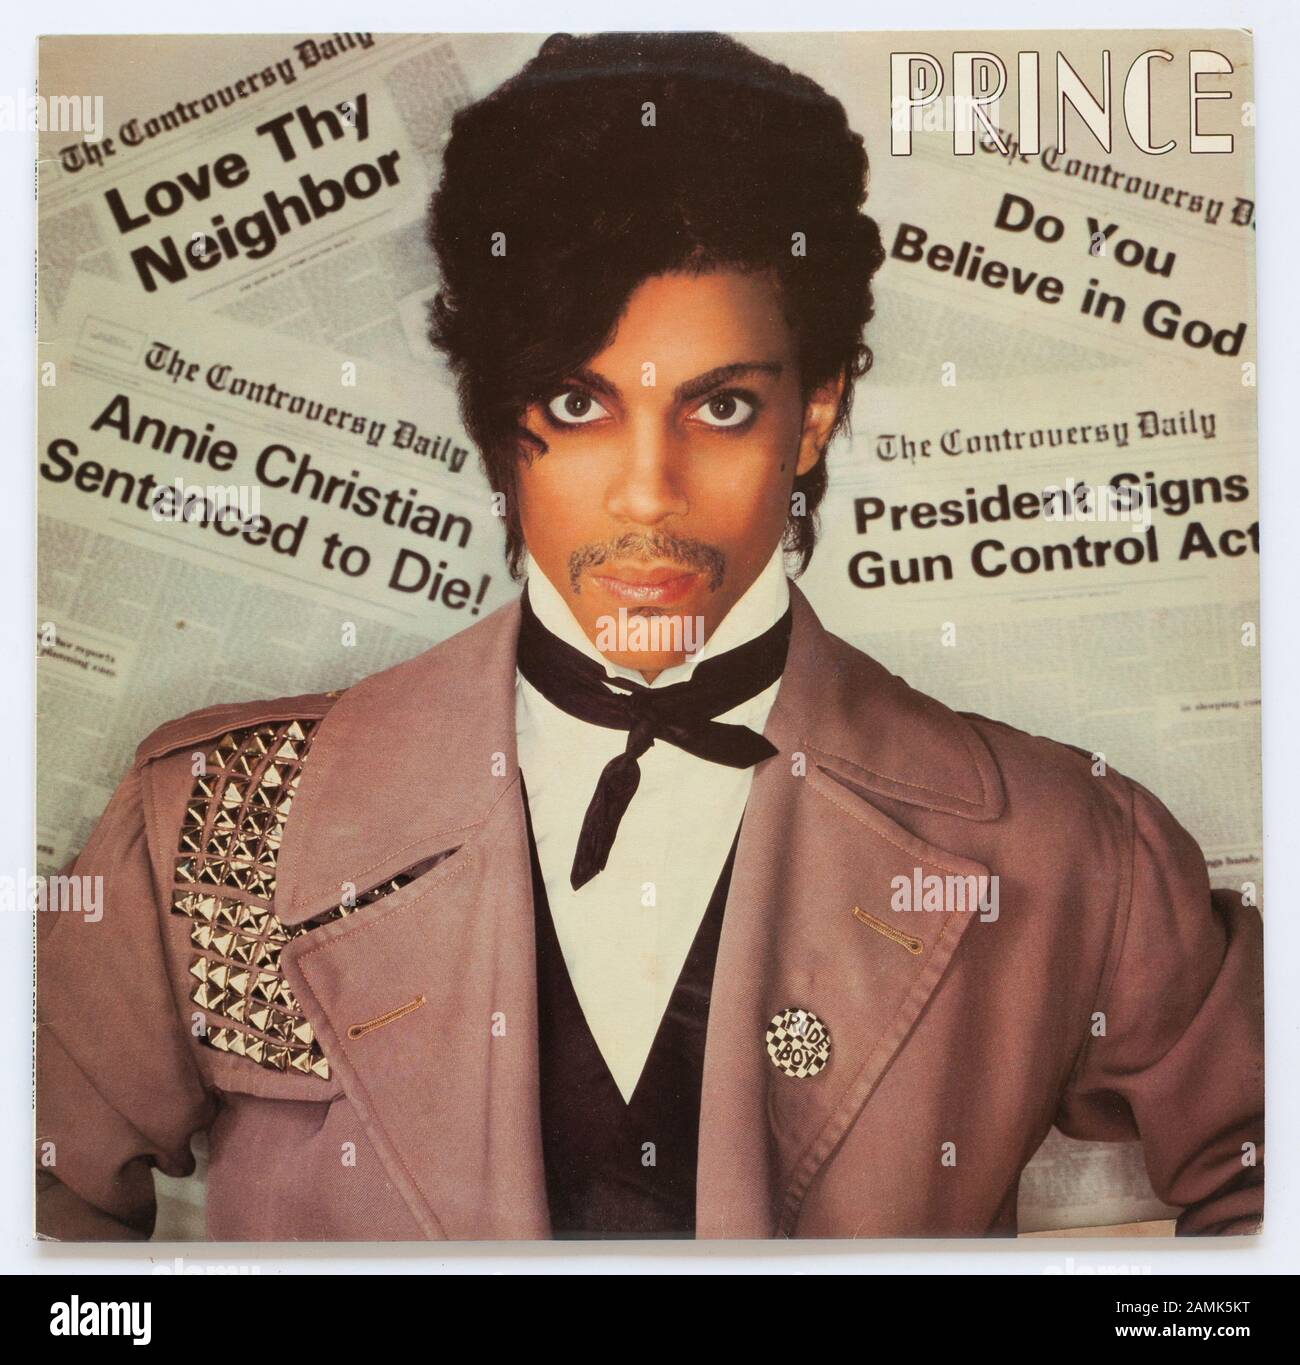 The Cover controversial, álbum de 1981 de Prince on Warner Bros. - sólo uso editorial Foto de stock